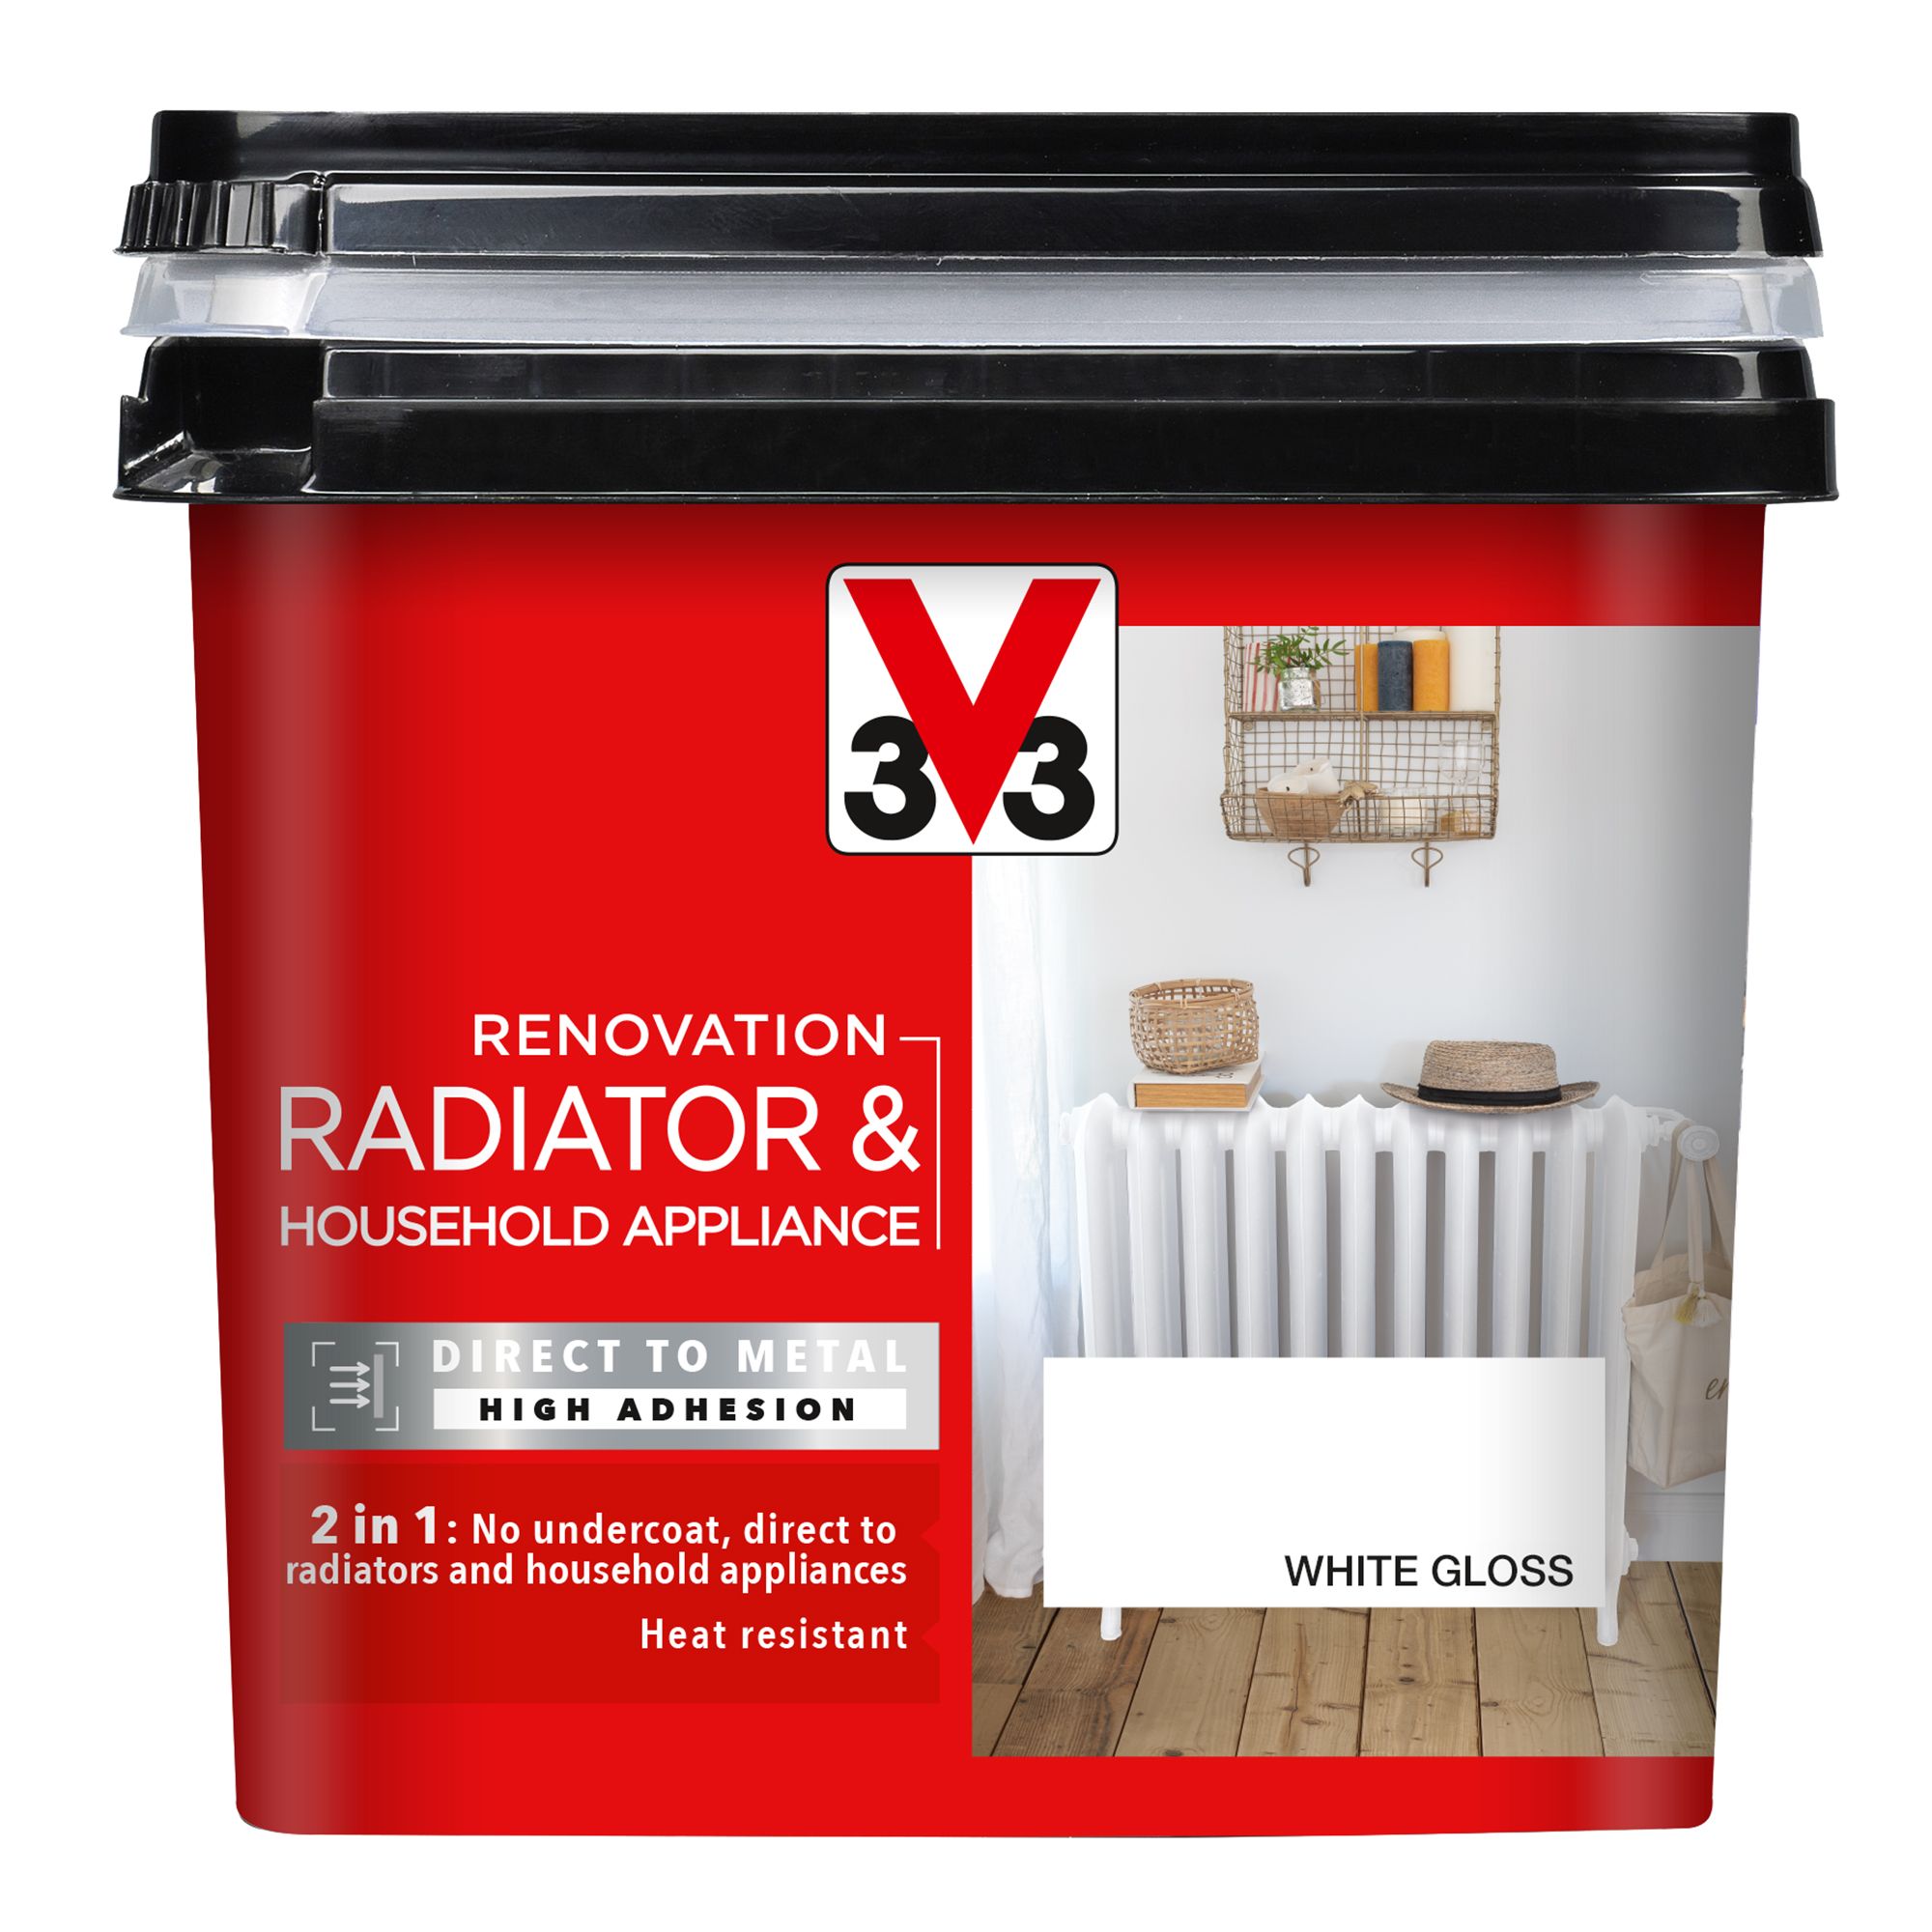 V33 Renovation White Gloss Radiator & appliance paint, 750ml